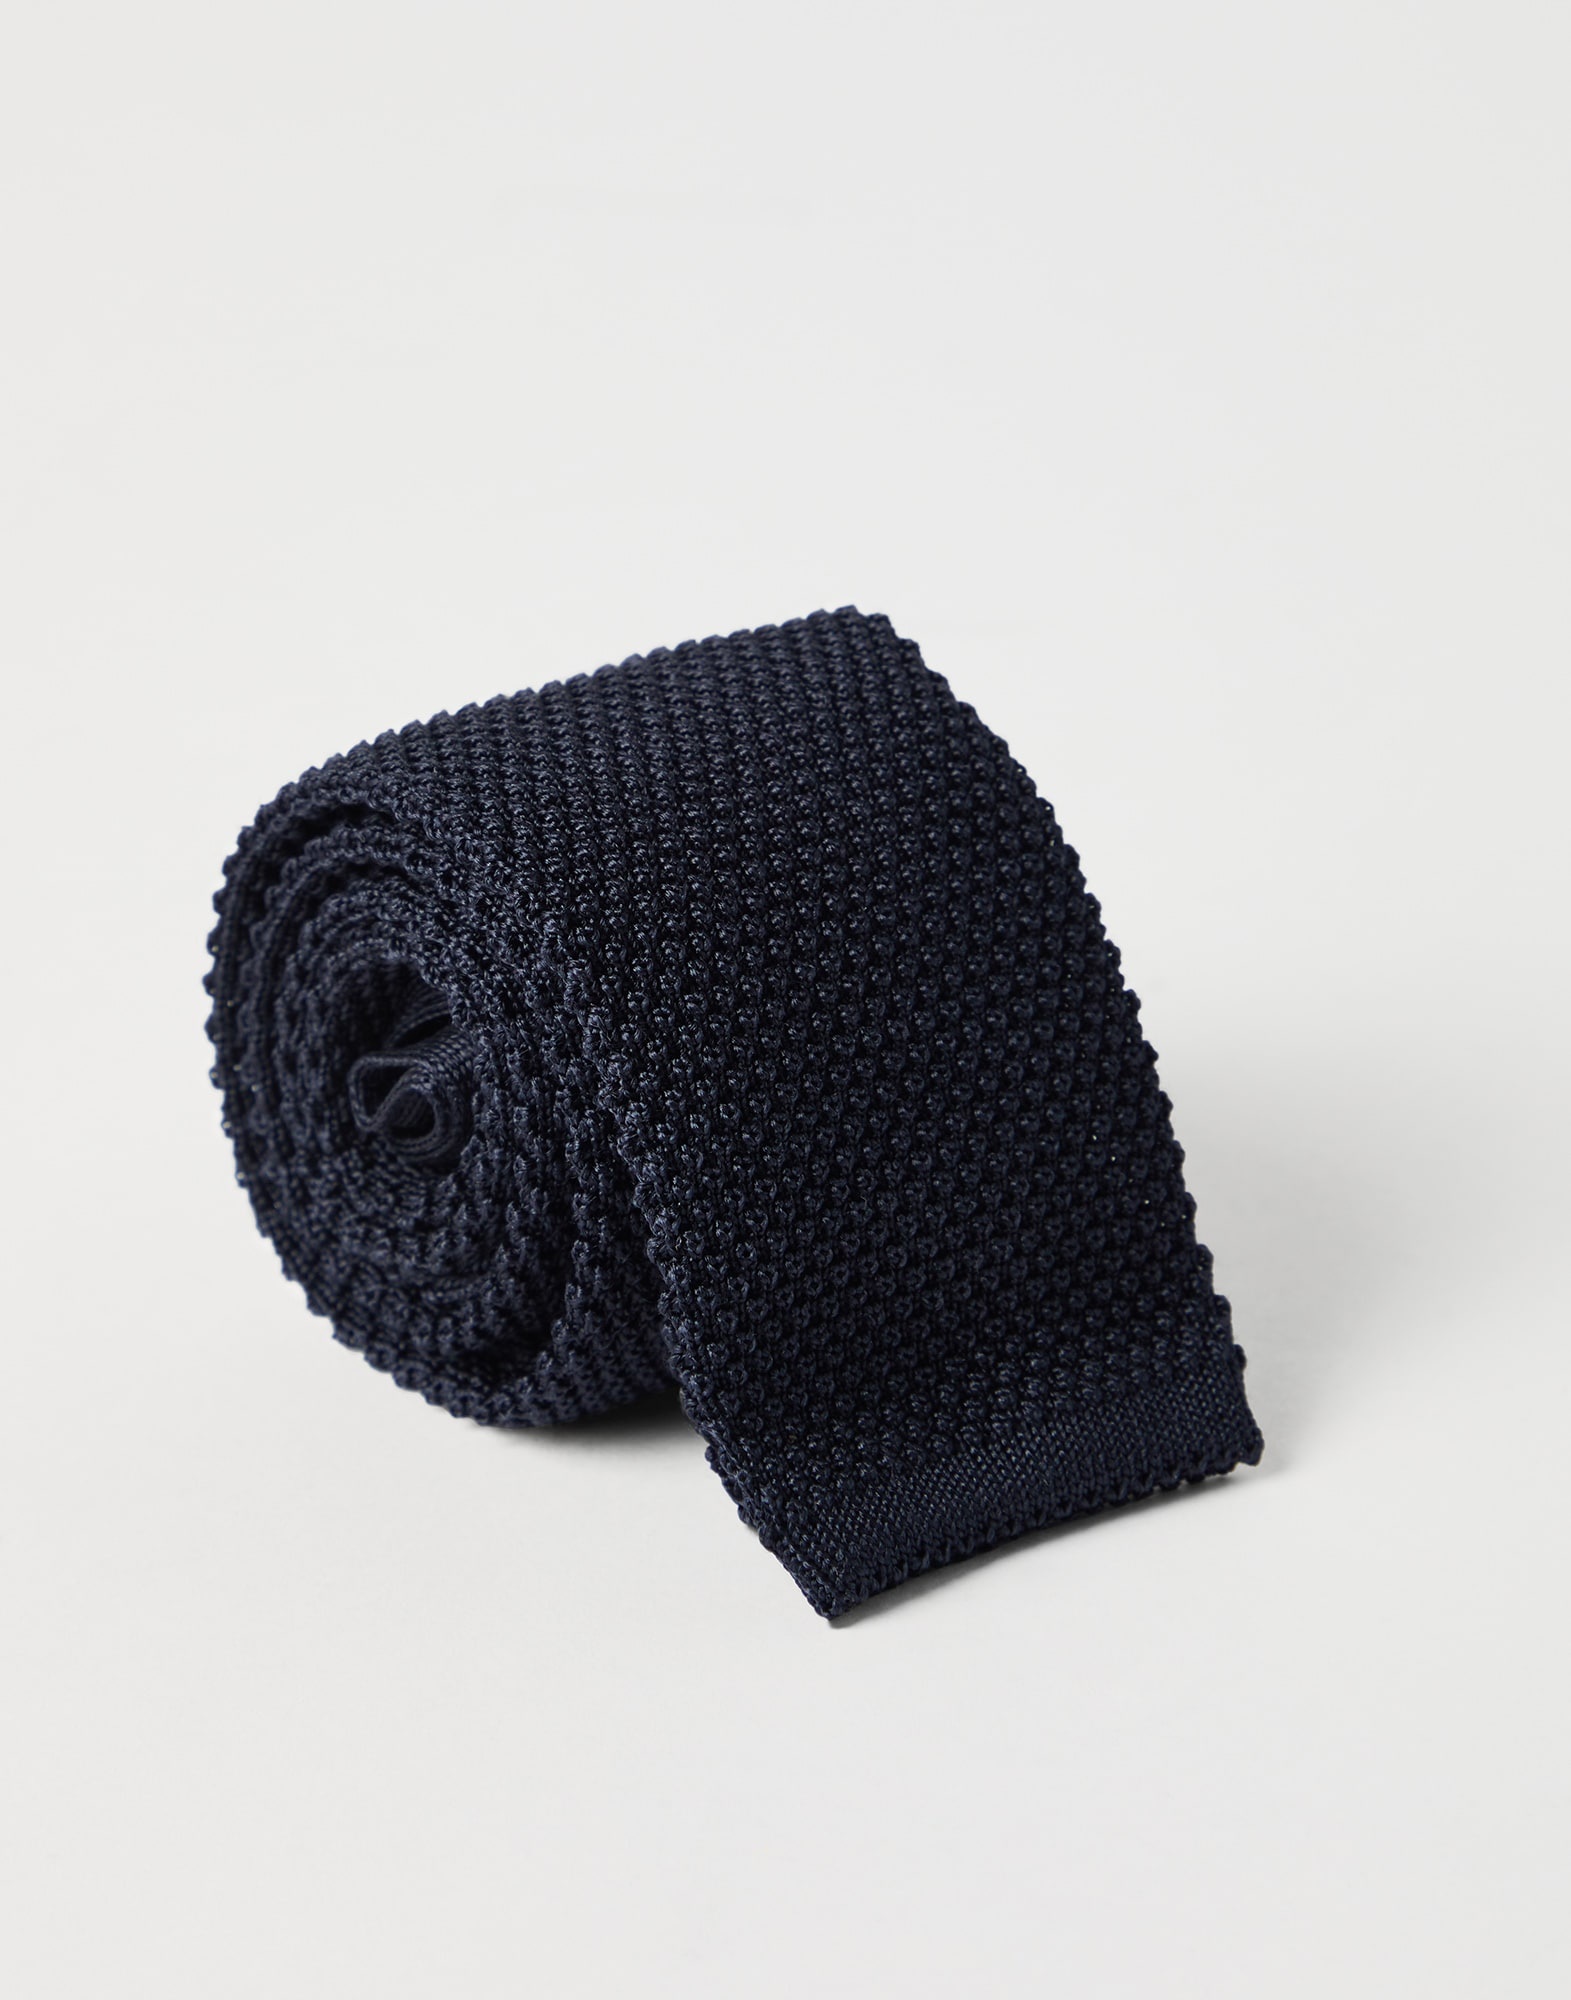 Silk knit tie - 2